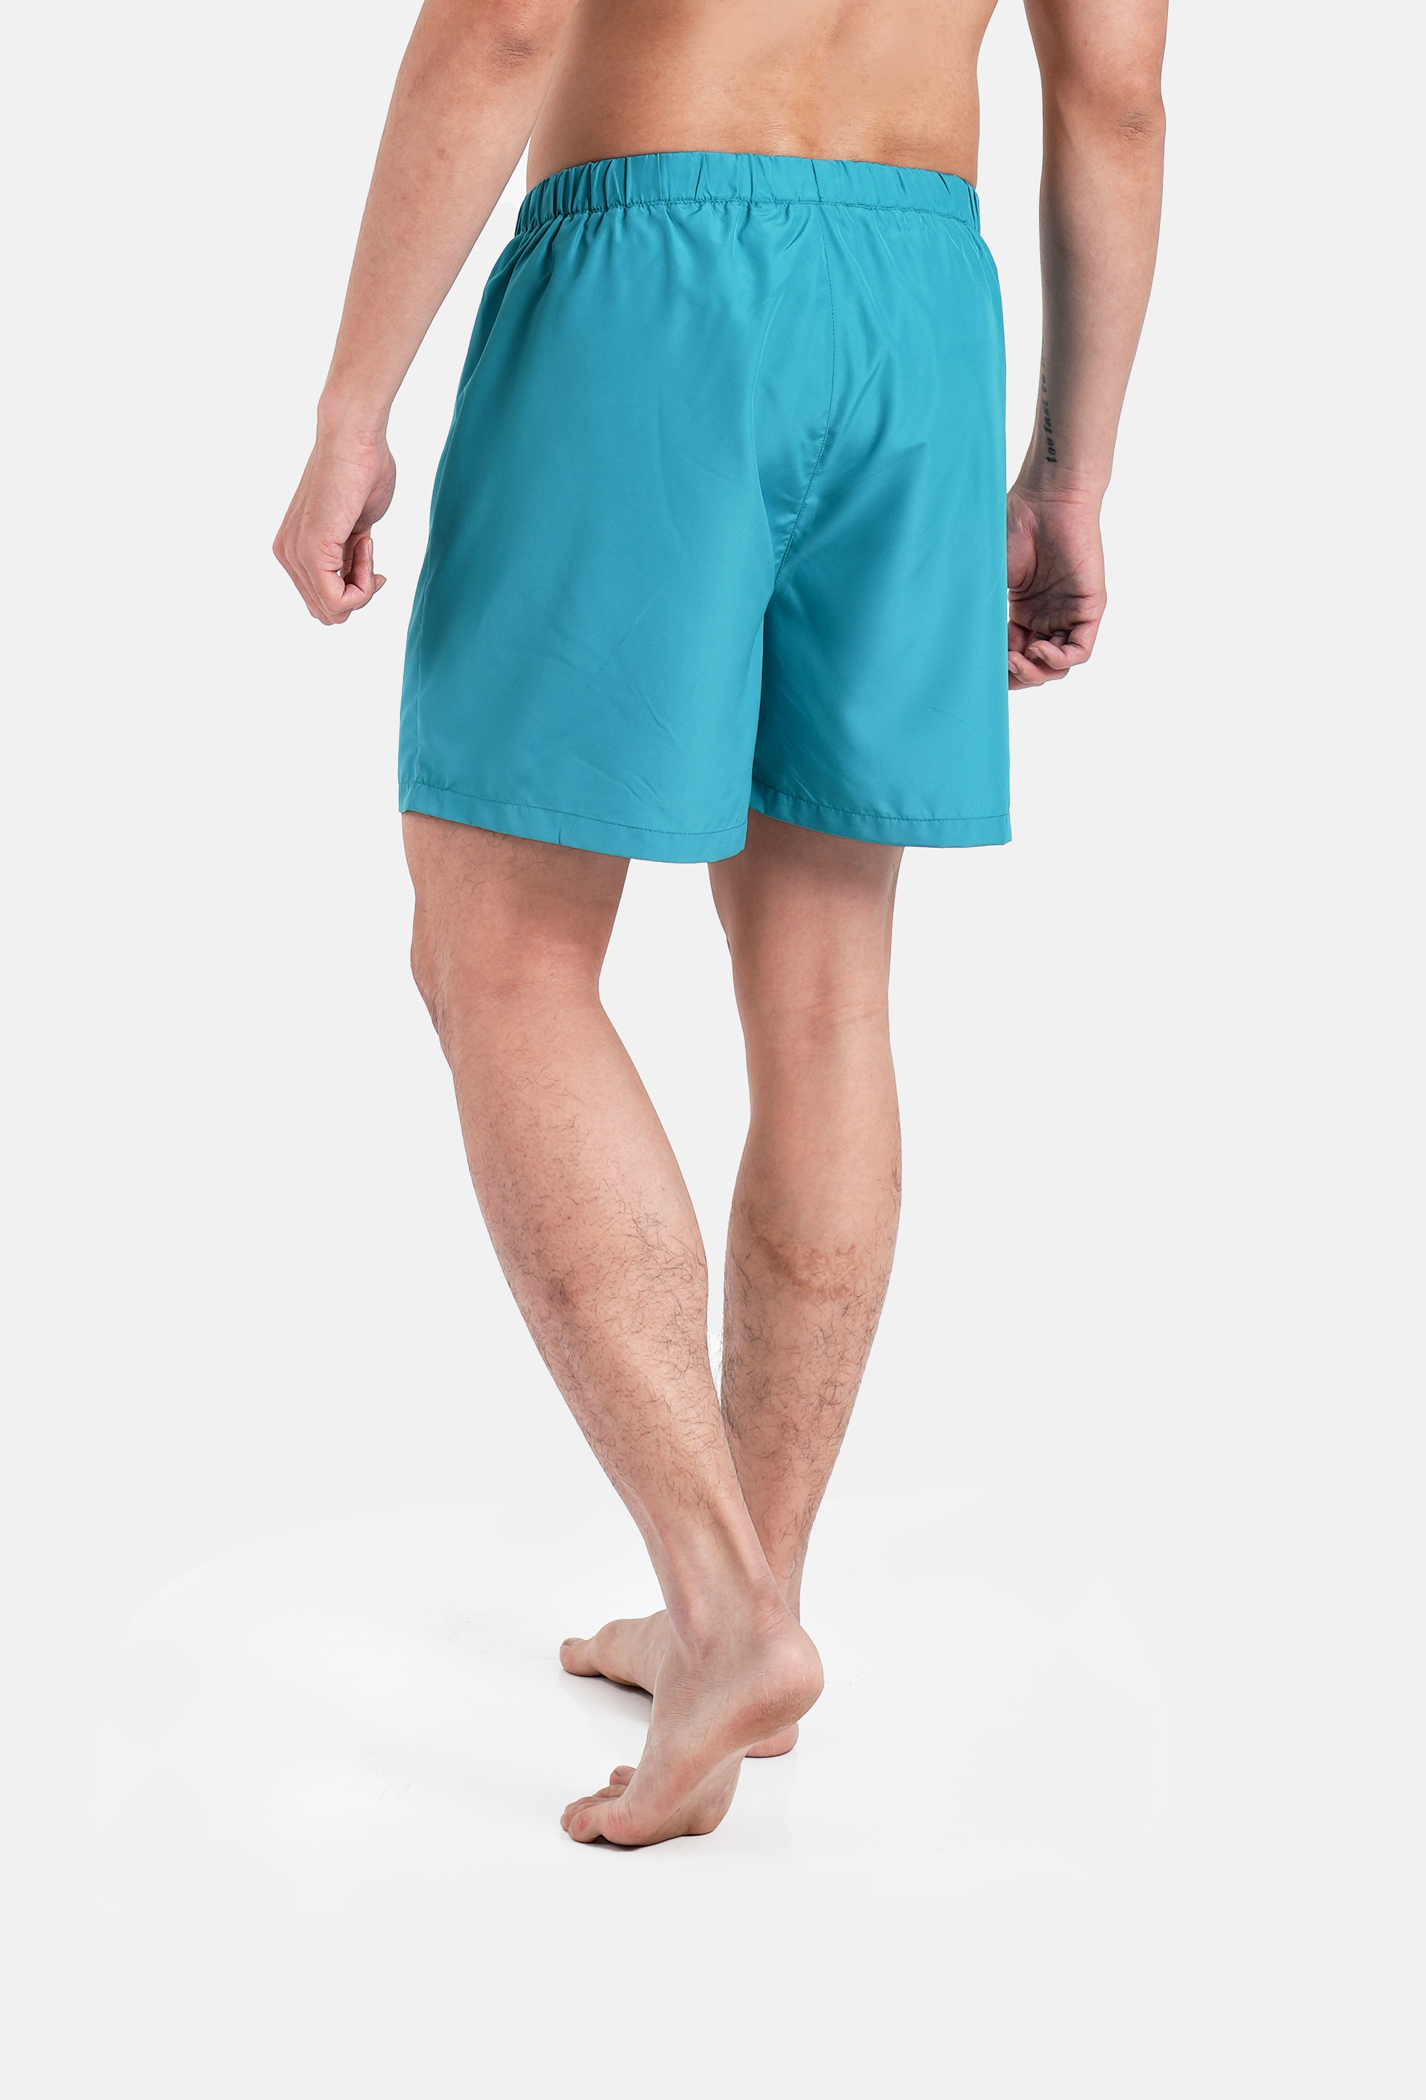 Săn deal - Quần Shorts mặc nhà Coolmate Basics Xanh ngọc 3